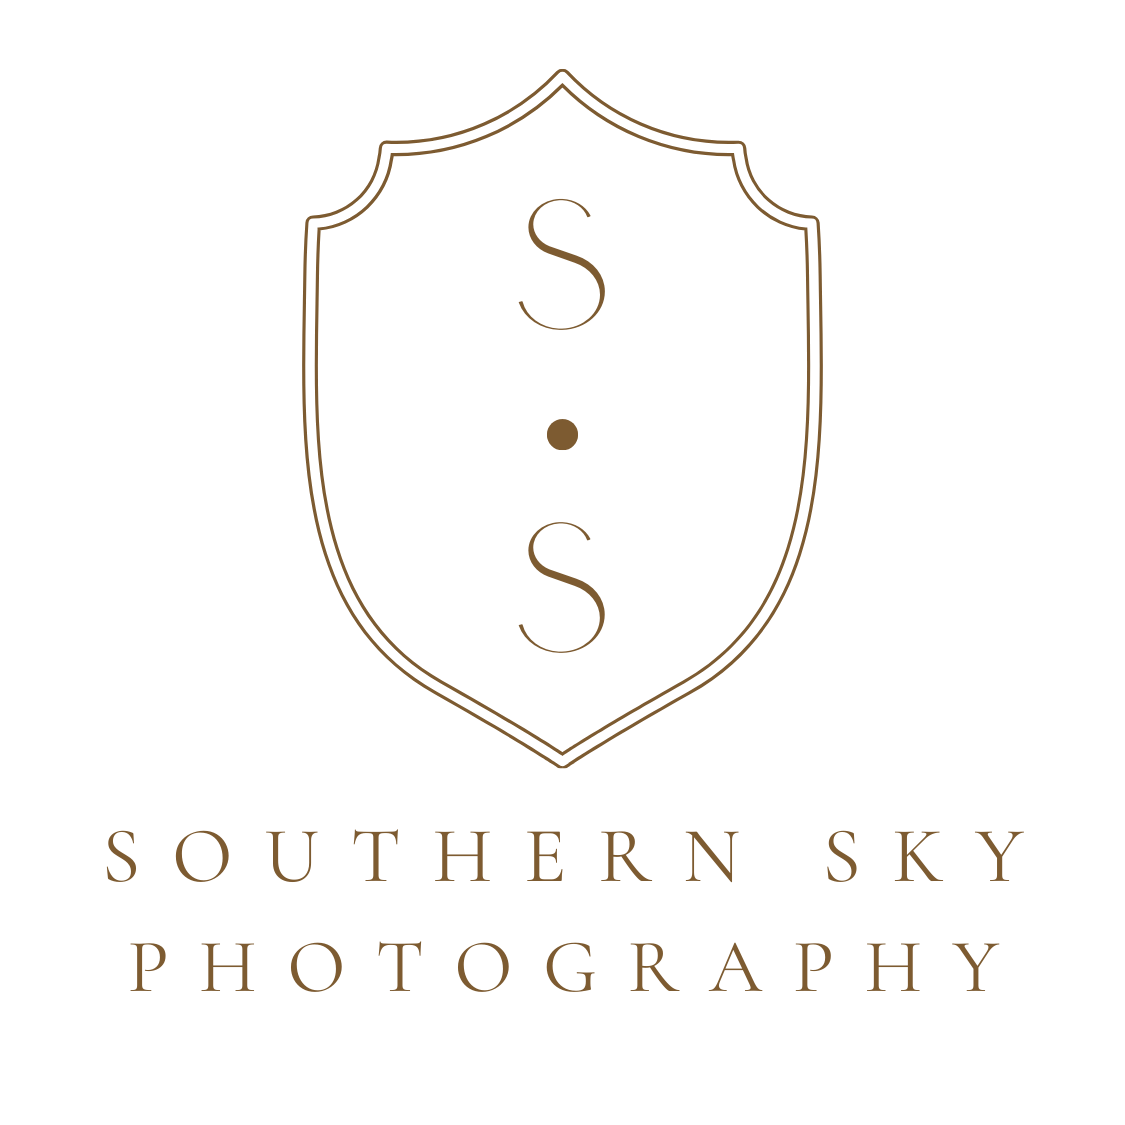 Southern Sky Photography